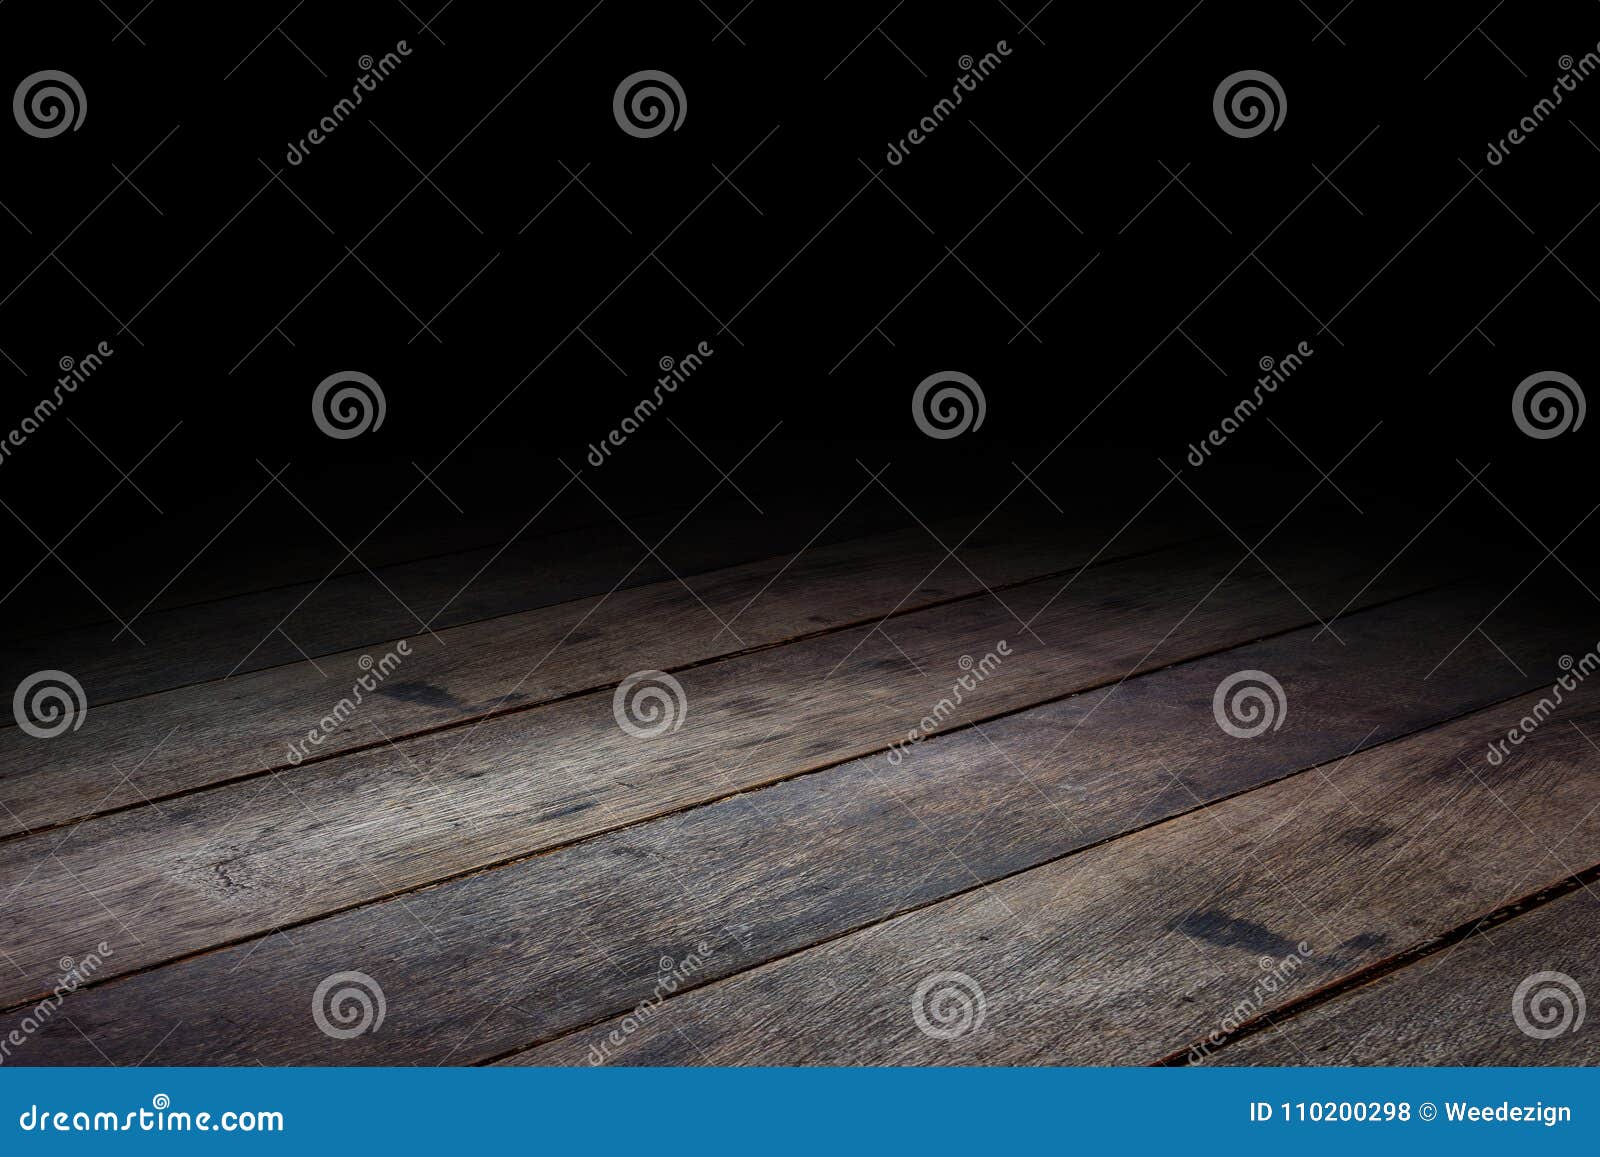 dark plank wood floor texture perspective background for display